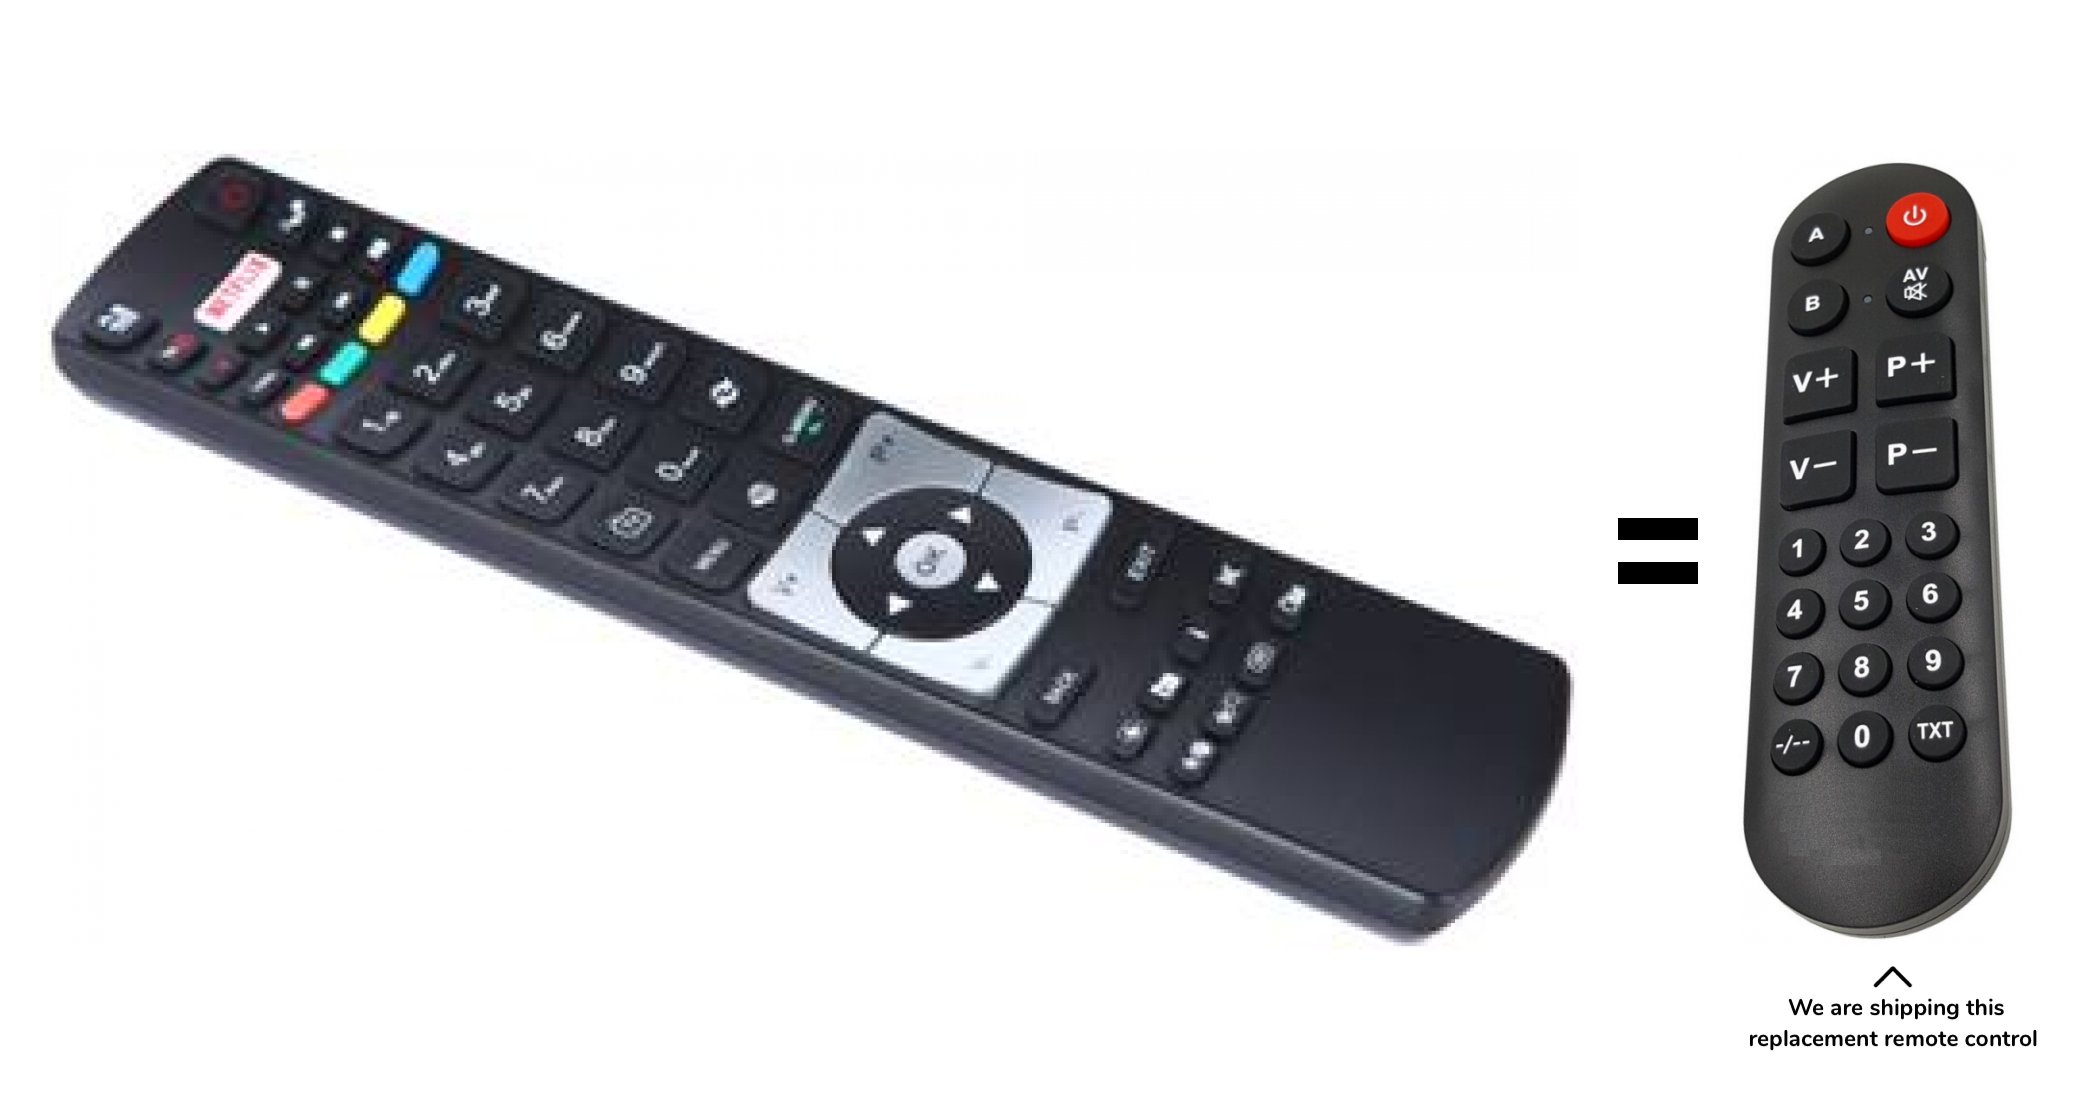 Finlux 49FUB8060 remote control for seniors